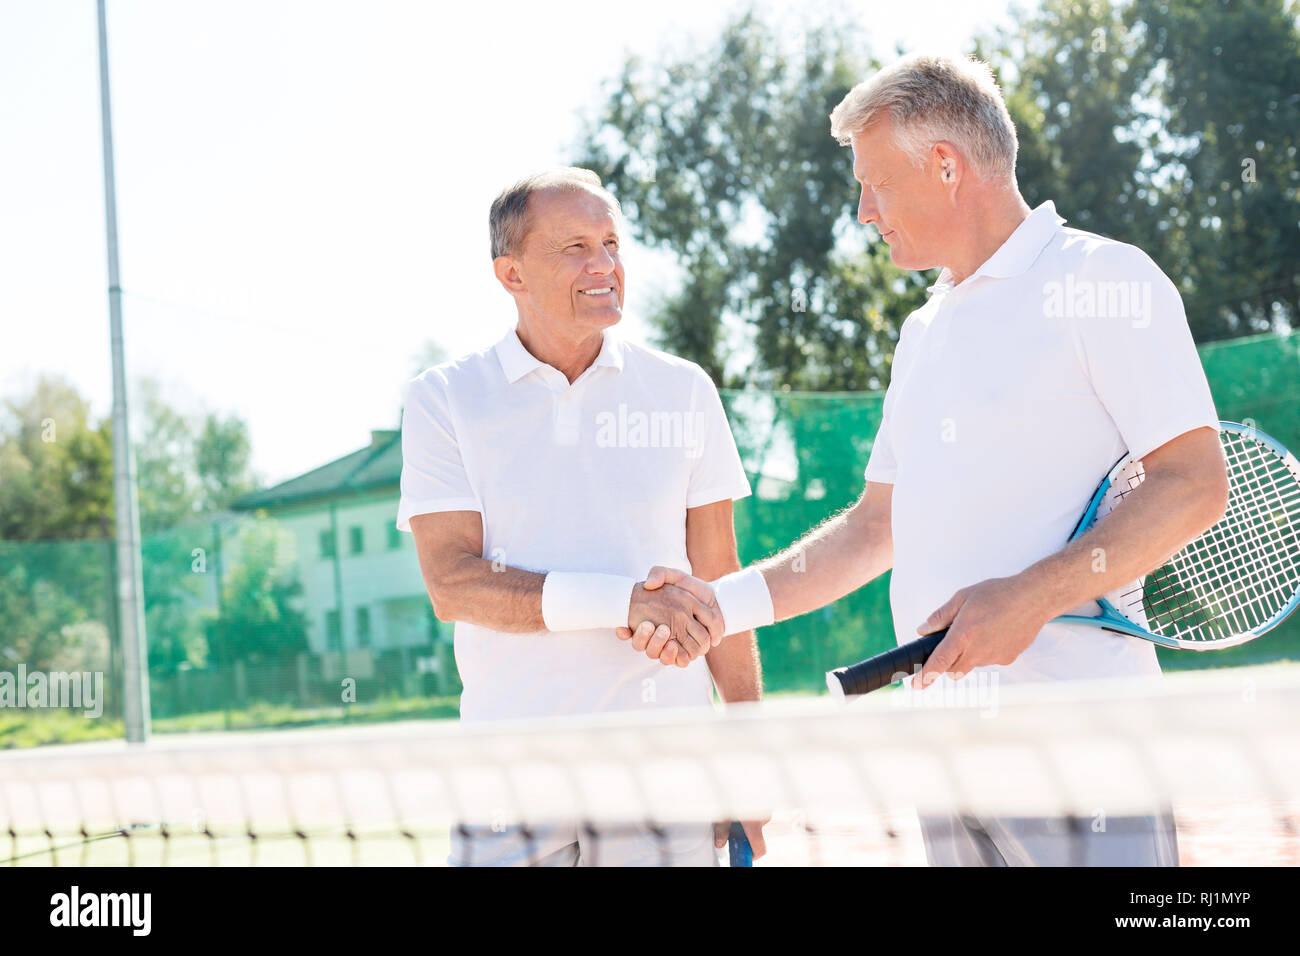 Lächelnde Männer Begrüßung beim Stehen auf Tennisplatz im Sommer überein Stockfoto